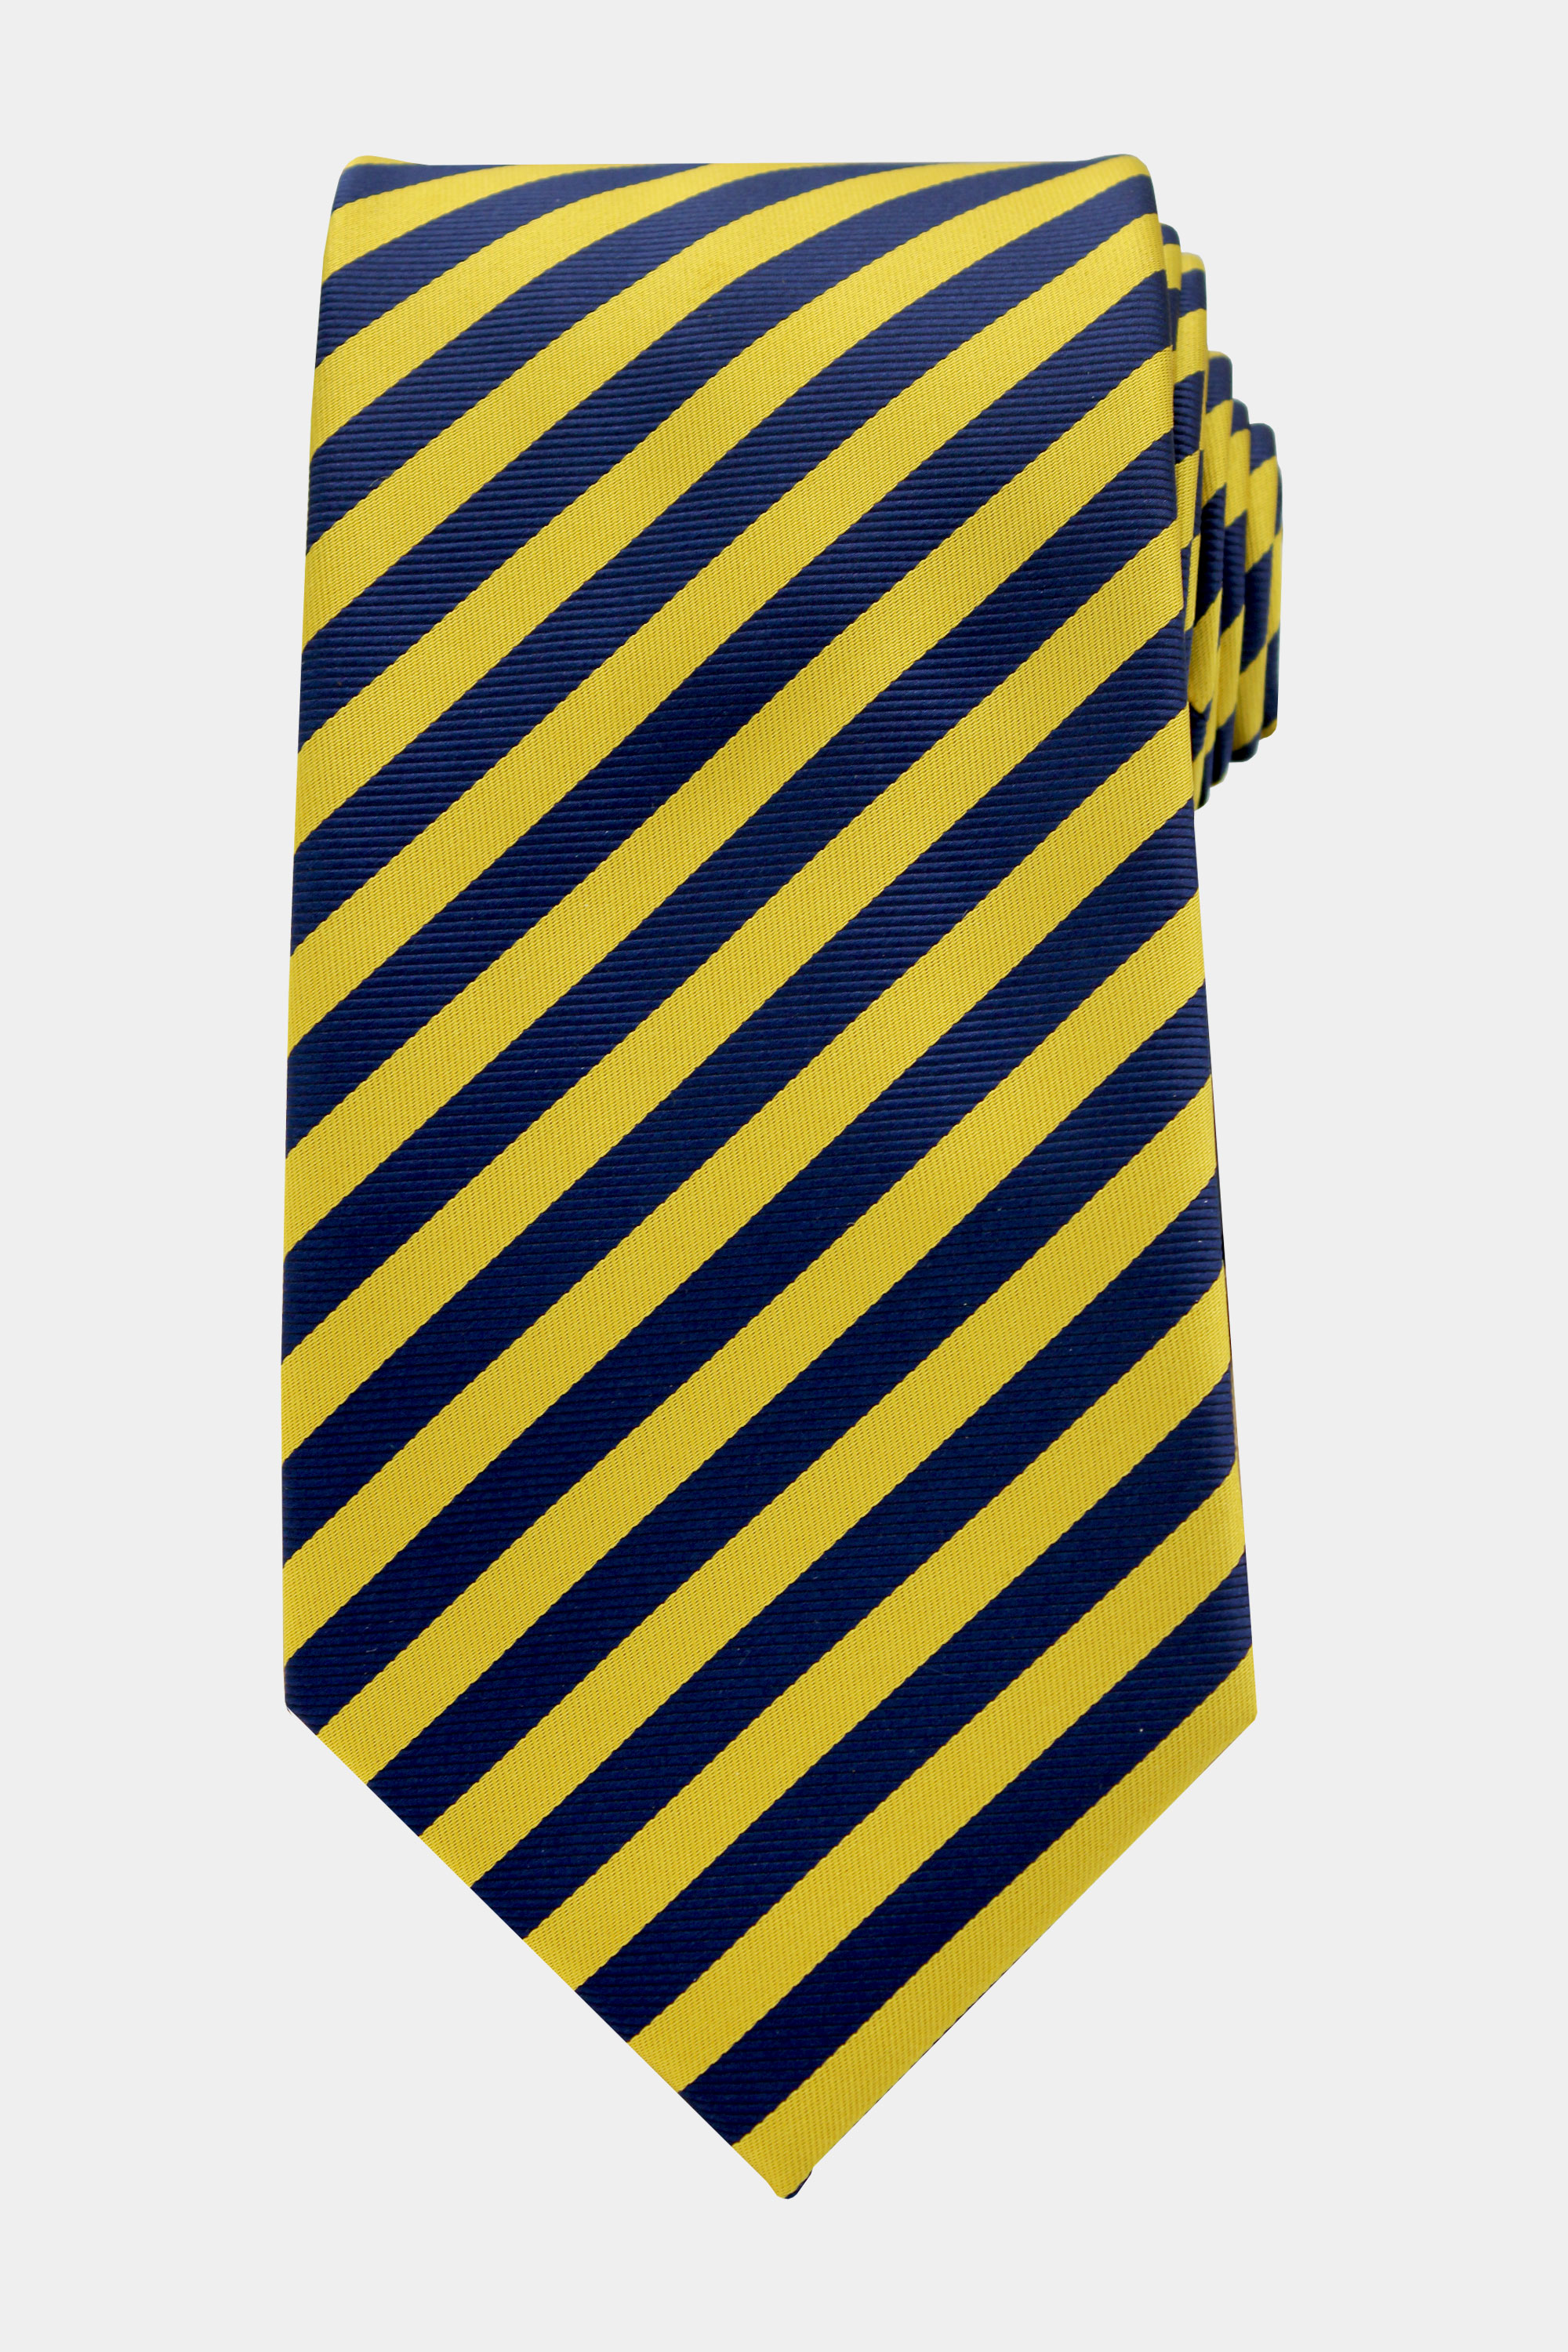 Mnes-Navy-and-Gold-Striped-Tie-from-Gentlemansguru.com